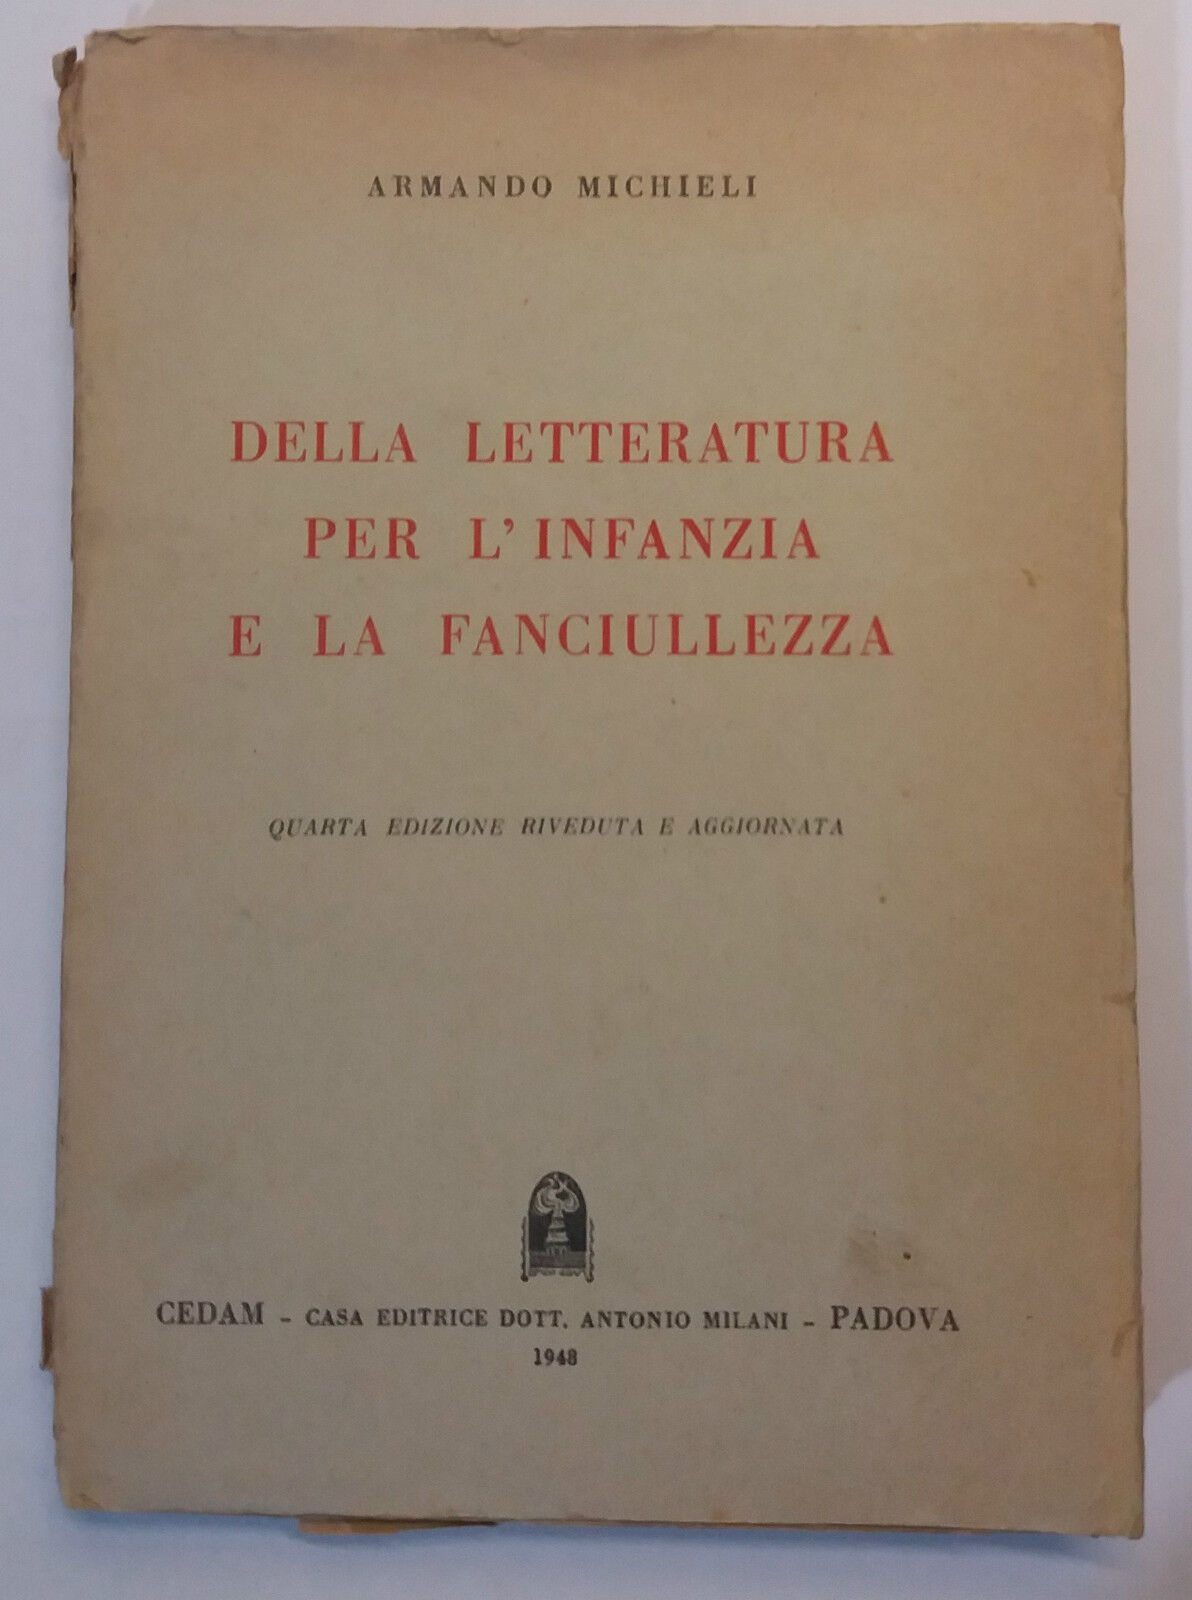 Della letteratura per l'infanzia e la fanciullezza - A.Michieli - CEDAM -1948- G